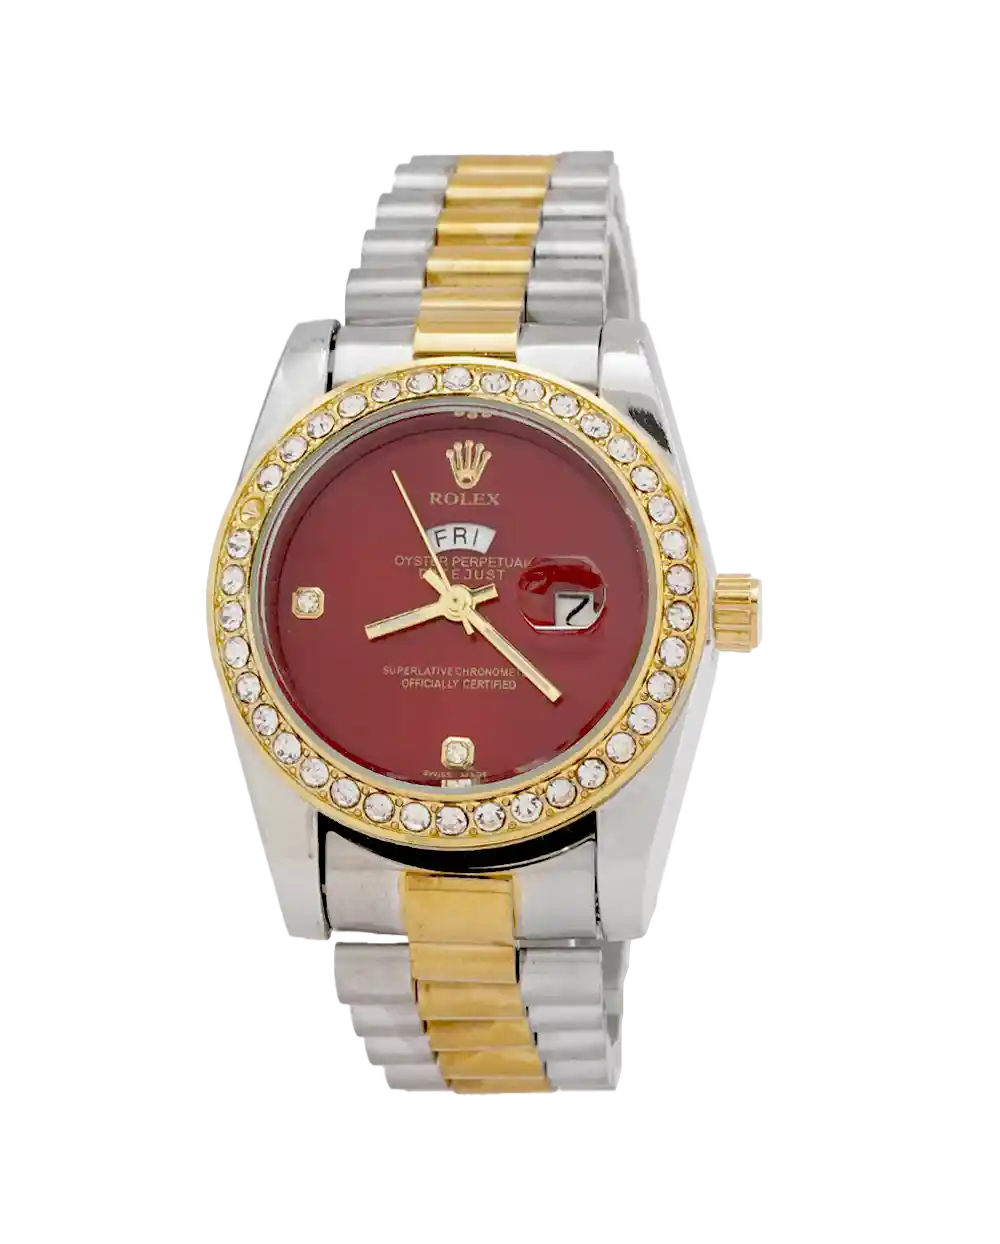 خرید ساعت مچی زنانه رولکس ROLEX طرح DAY DATE مدل 1947 صفحه قرمز و بند استیل نقره ای طلایی با قفل اصلی رولکس بهترین قیمت و ارسال رایگان